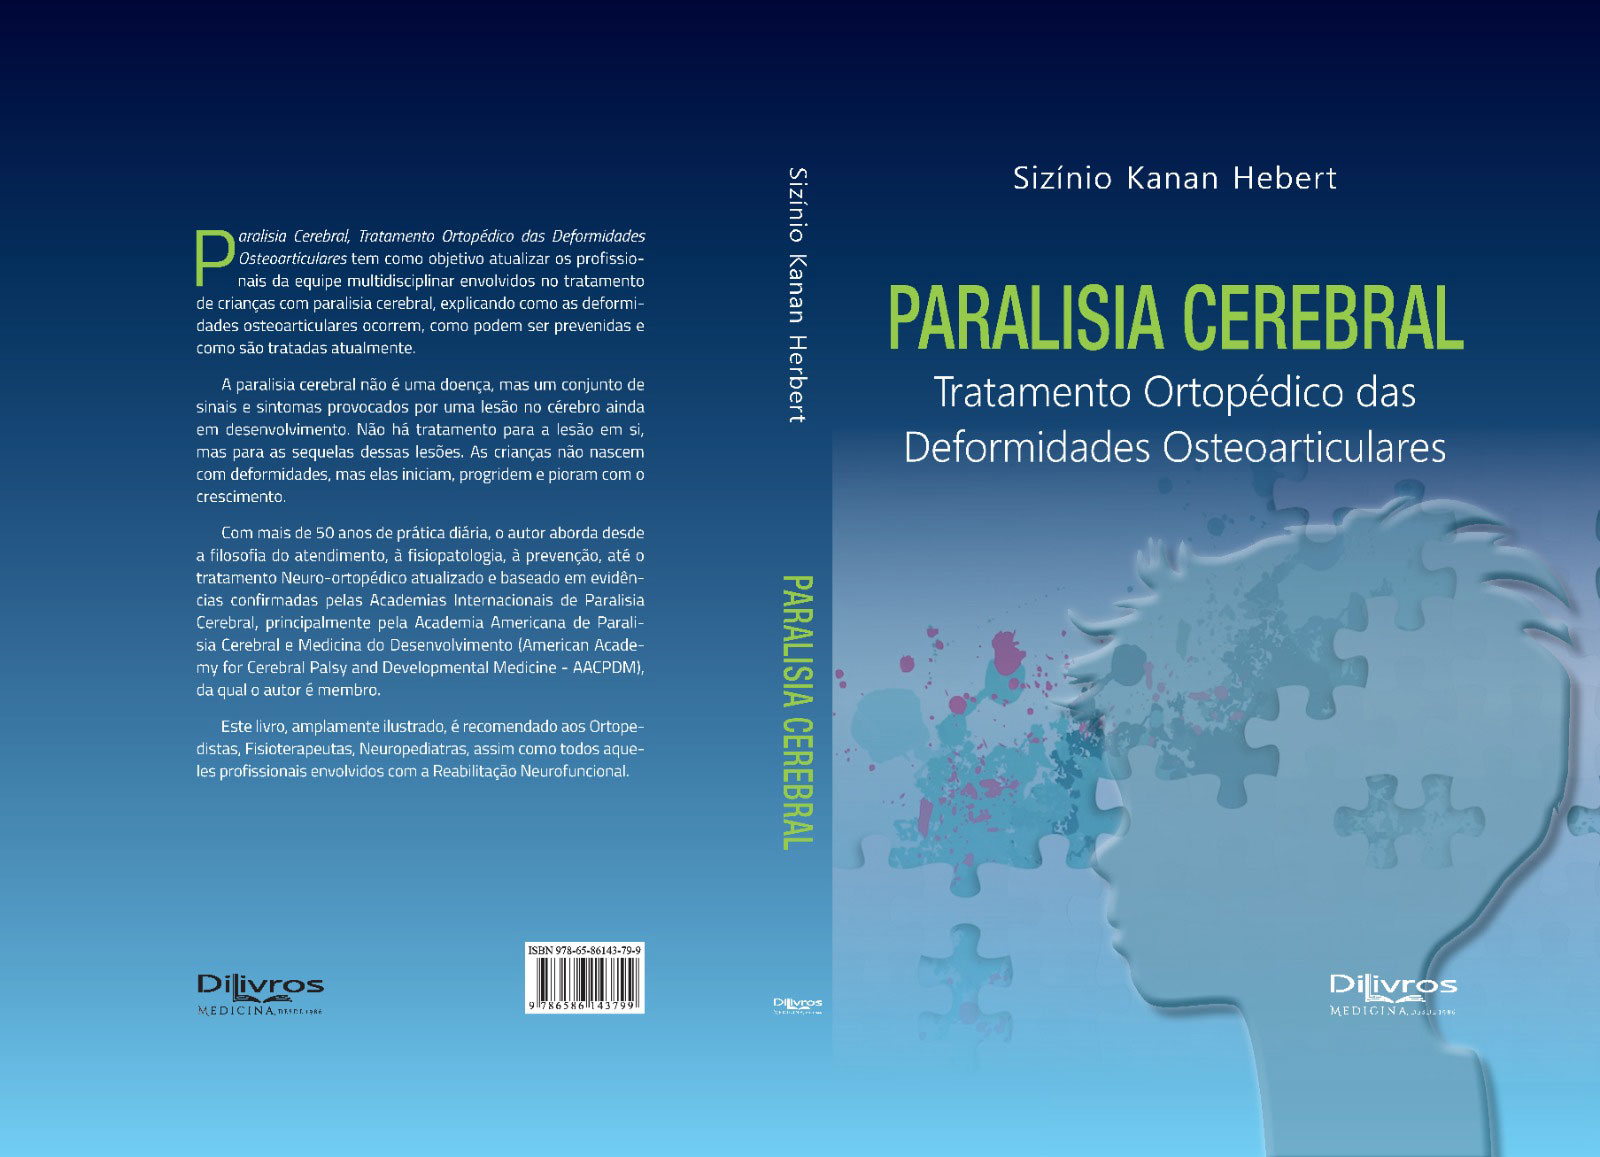 PARALISIA CEREBRAL - Tratamento Ortopédico das Deformidades Osteoarticulares